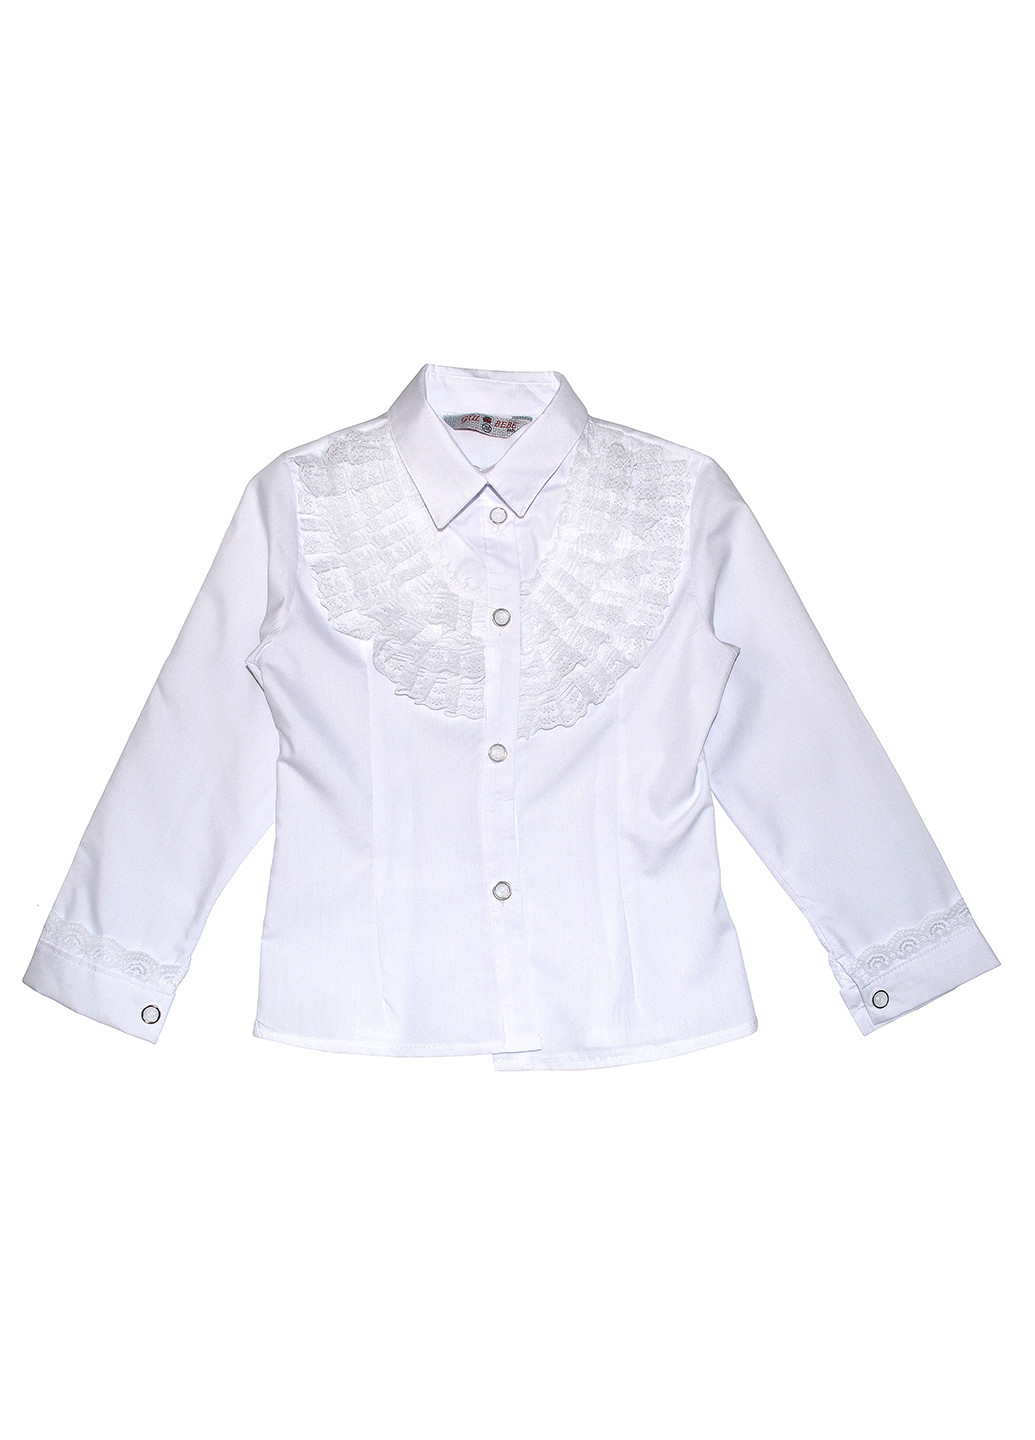 Белая однотонная блузка с длинным рукавом Gul Bebe демисезонная